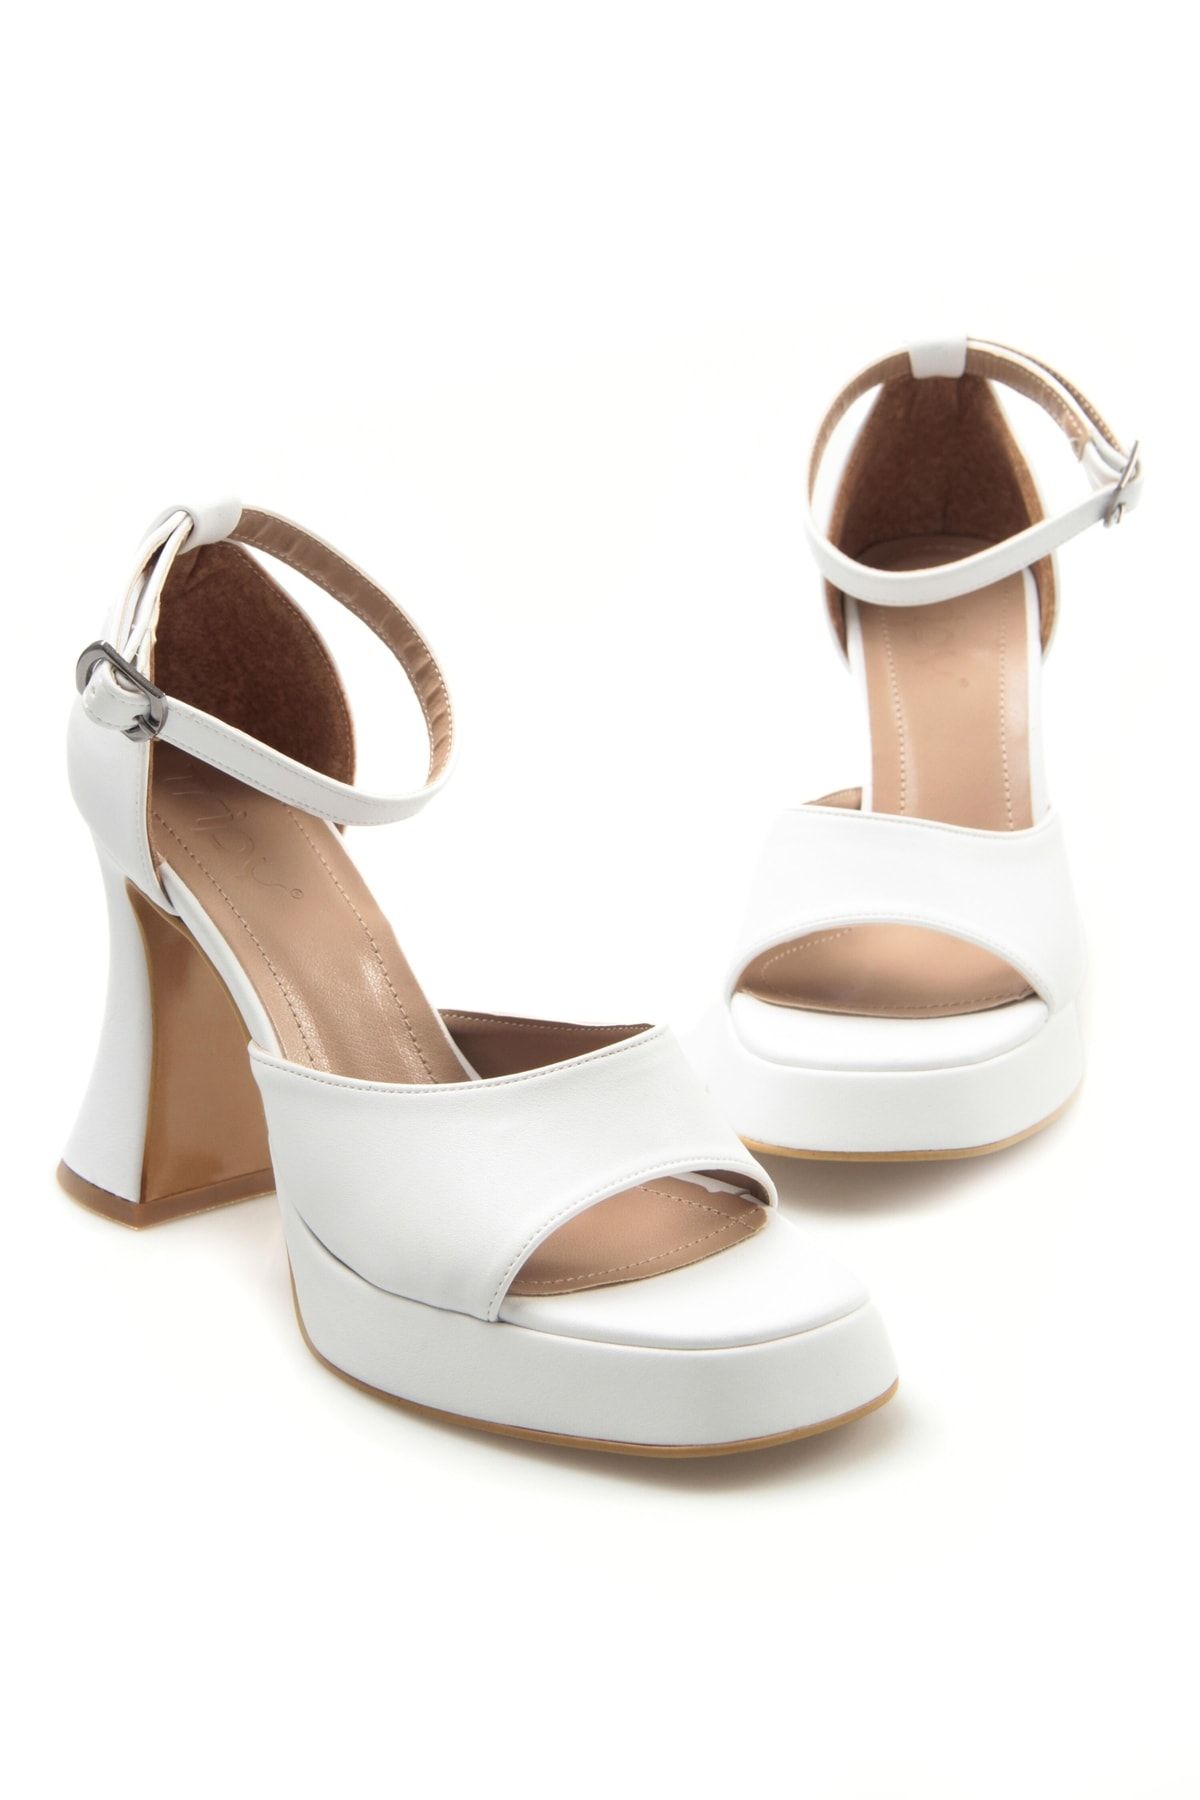 Tripy Kadın Bride Gelin Nikah Düğün Mezuniyet Ayakkabısı Bantlı Beyaz Platform Topuklu Ayakkabı Lossa